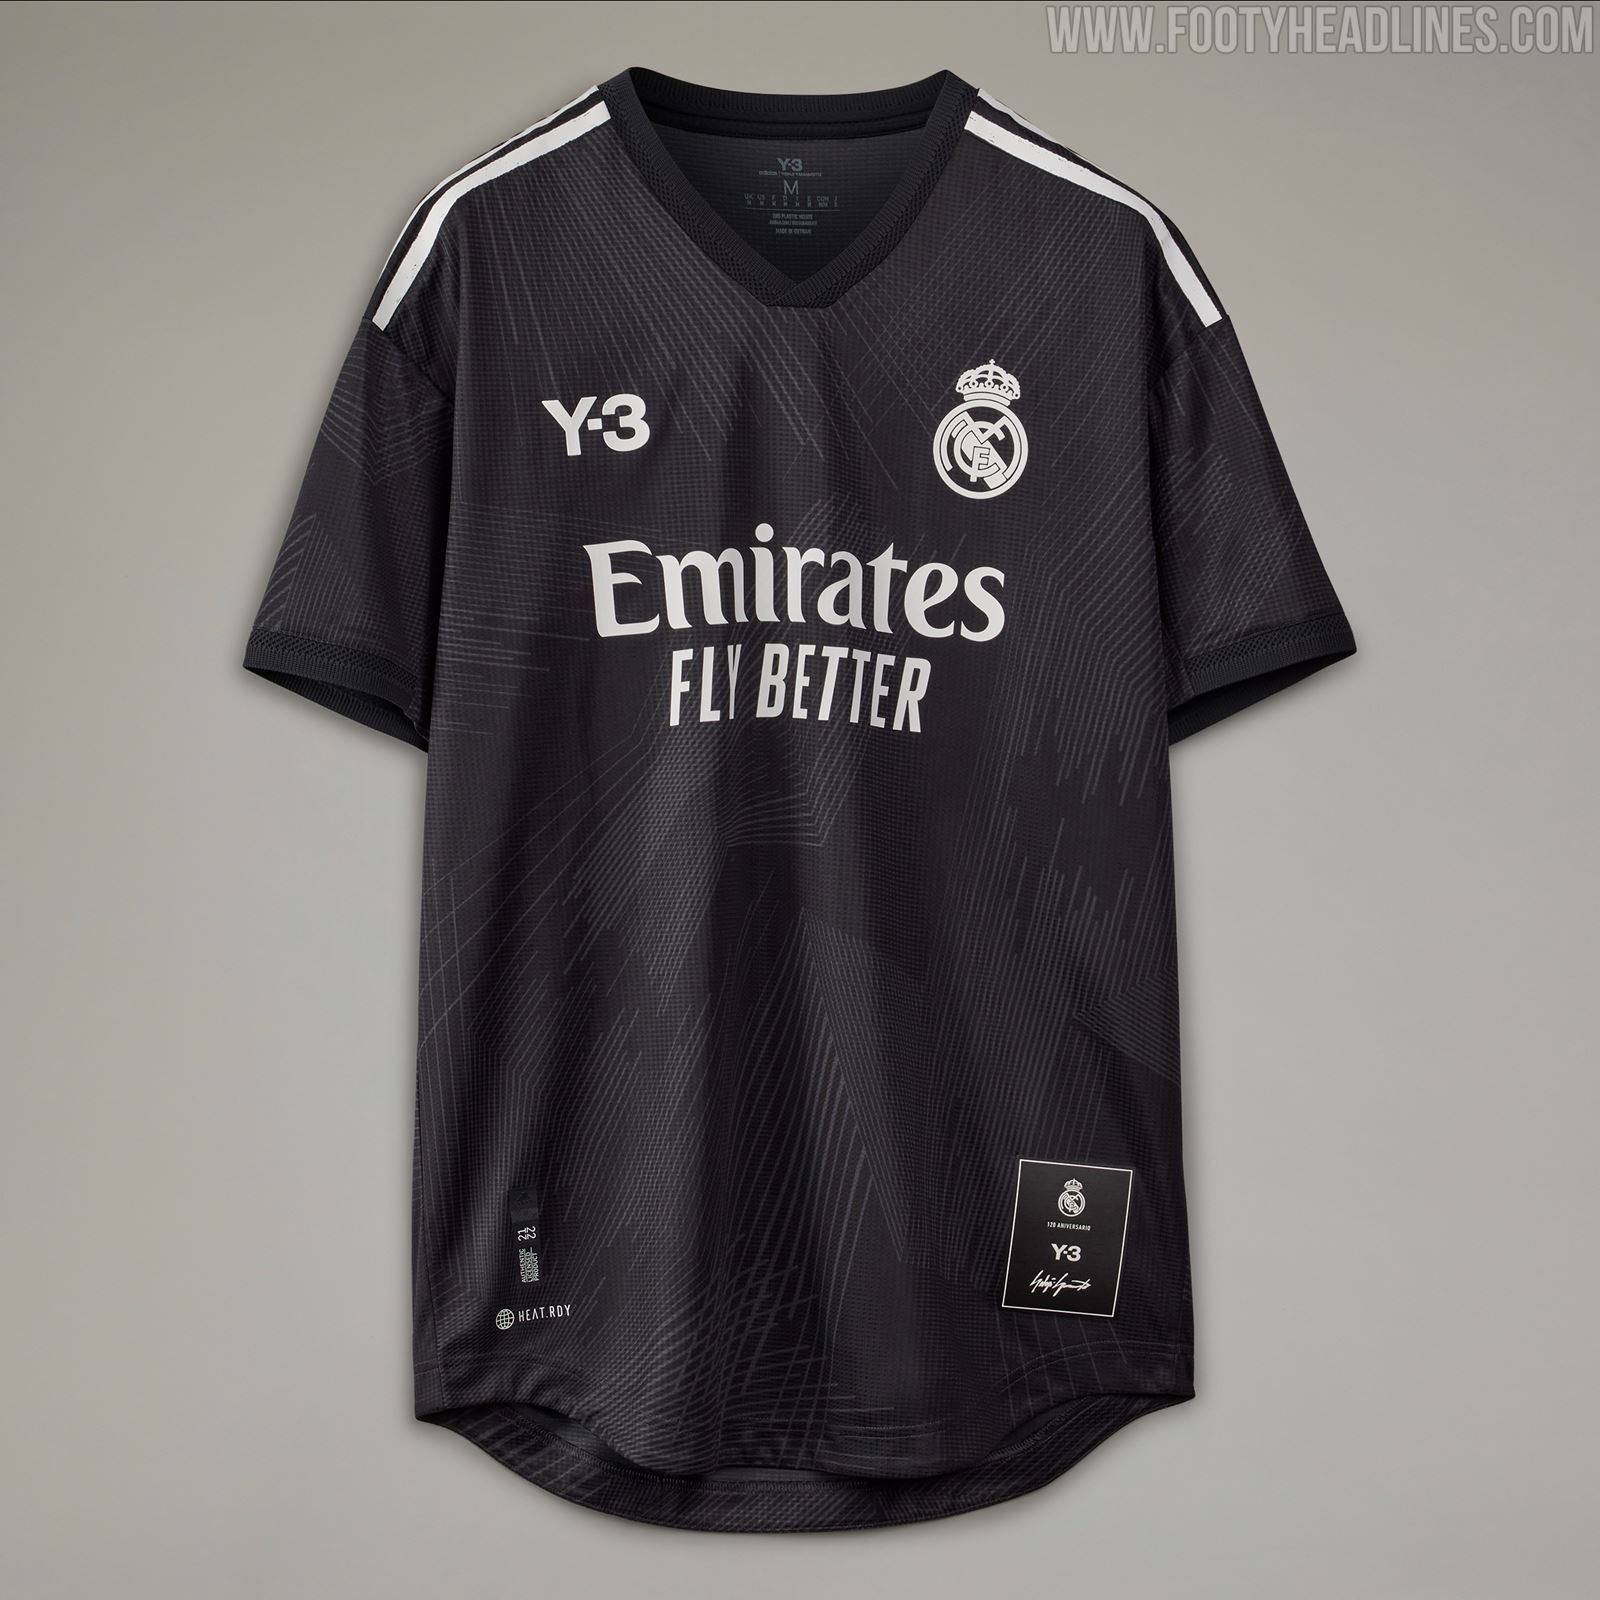 Lanzamiento de la colección completa del 120 aniversario del Real Madrid de Y-3